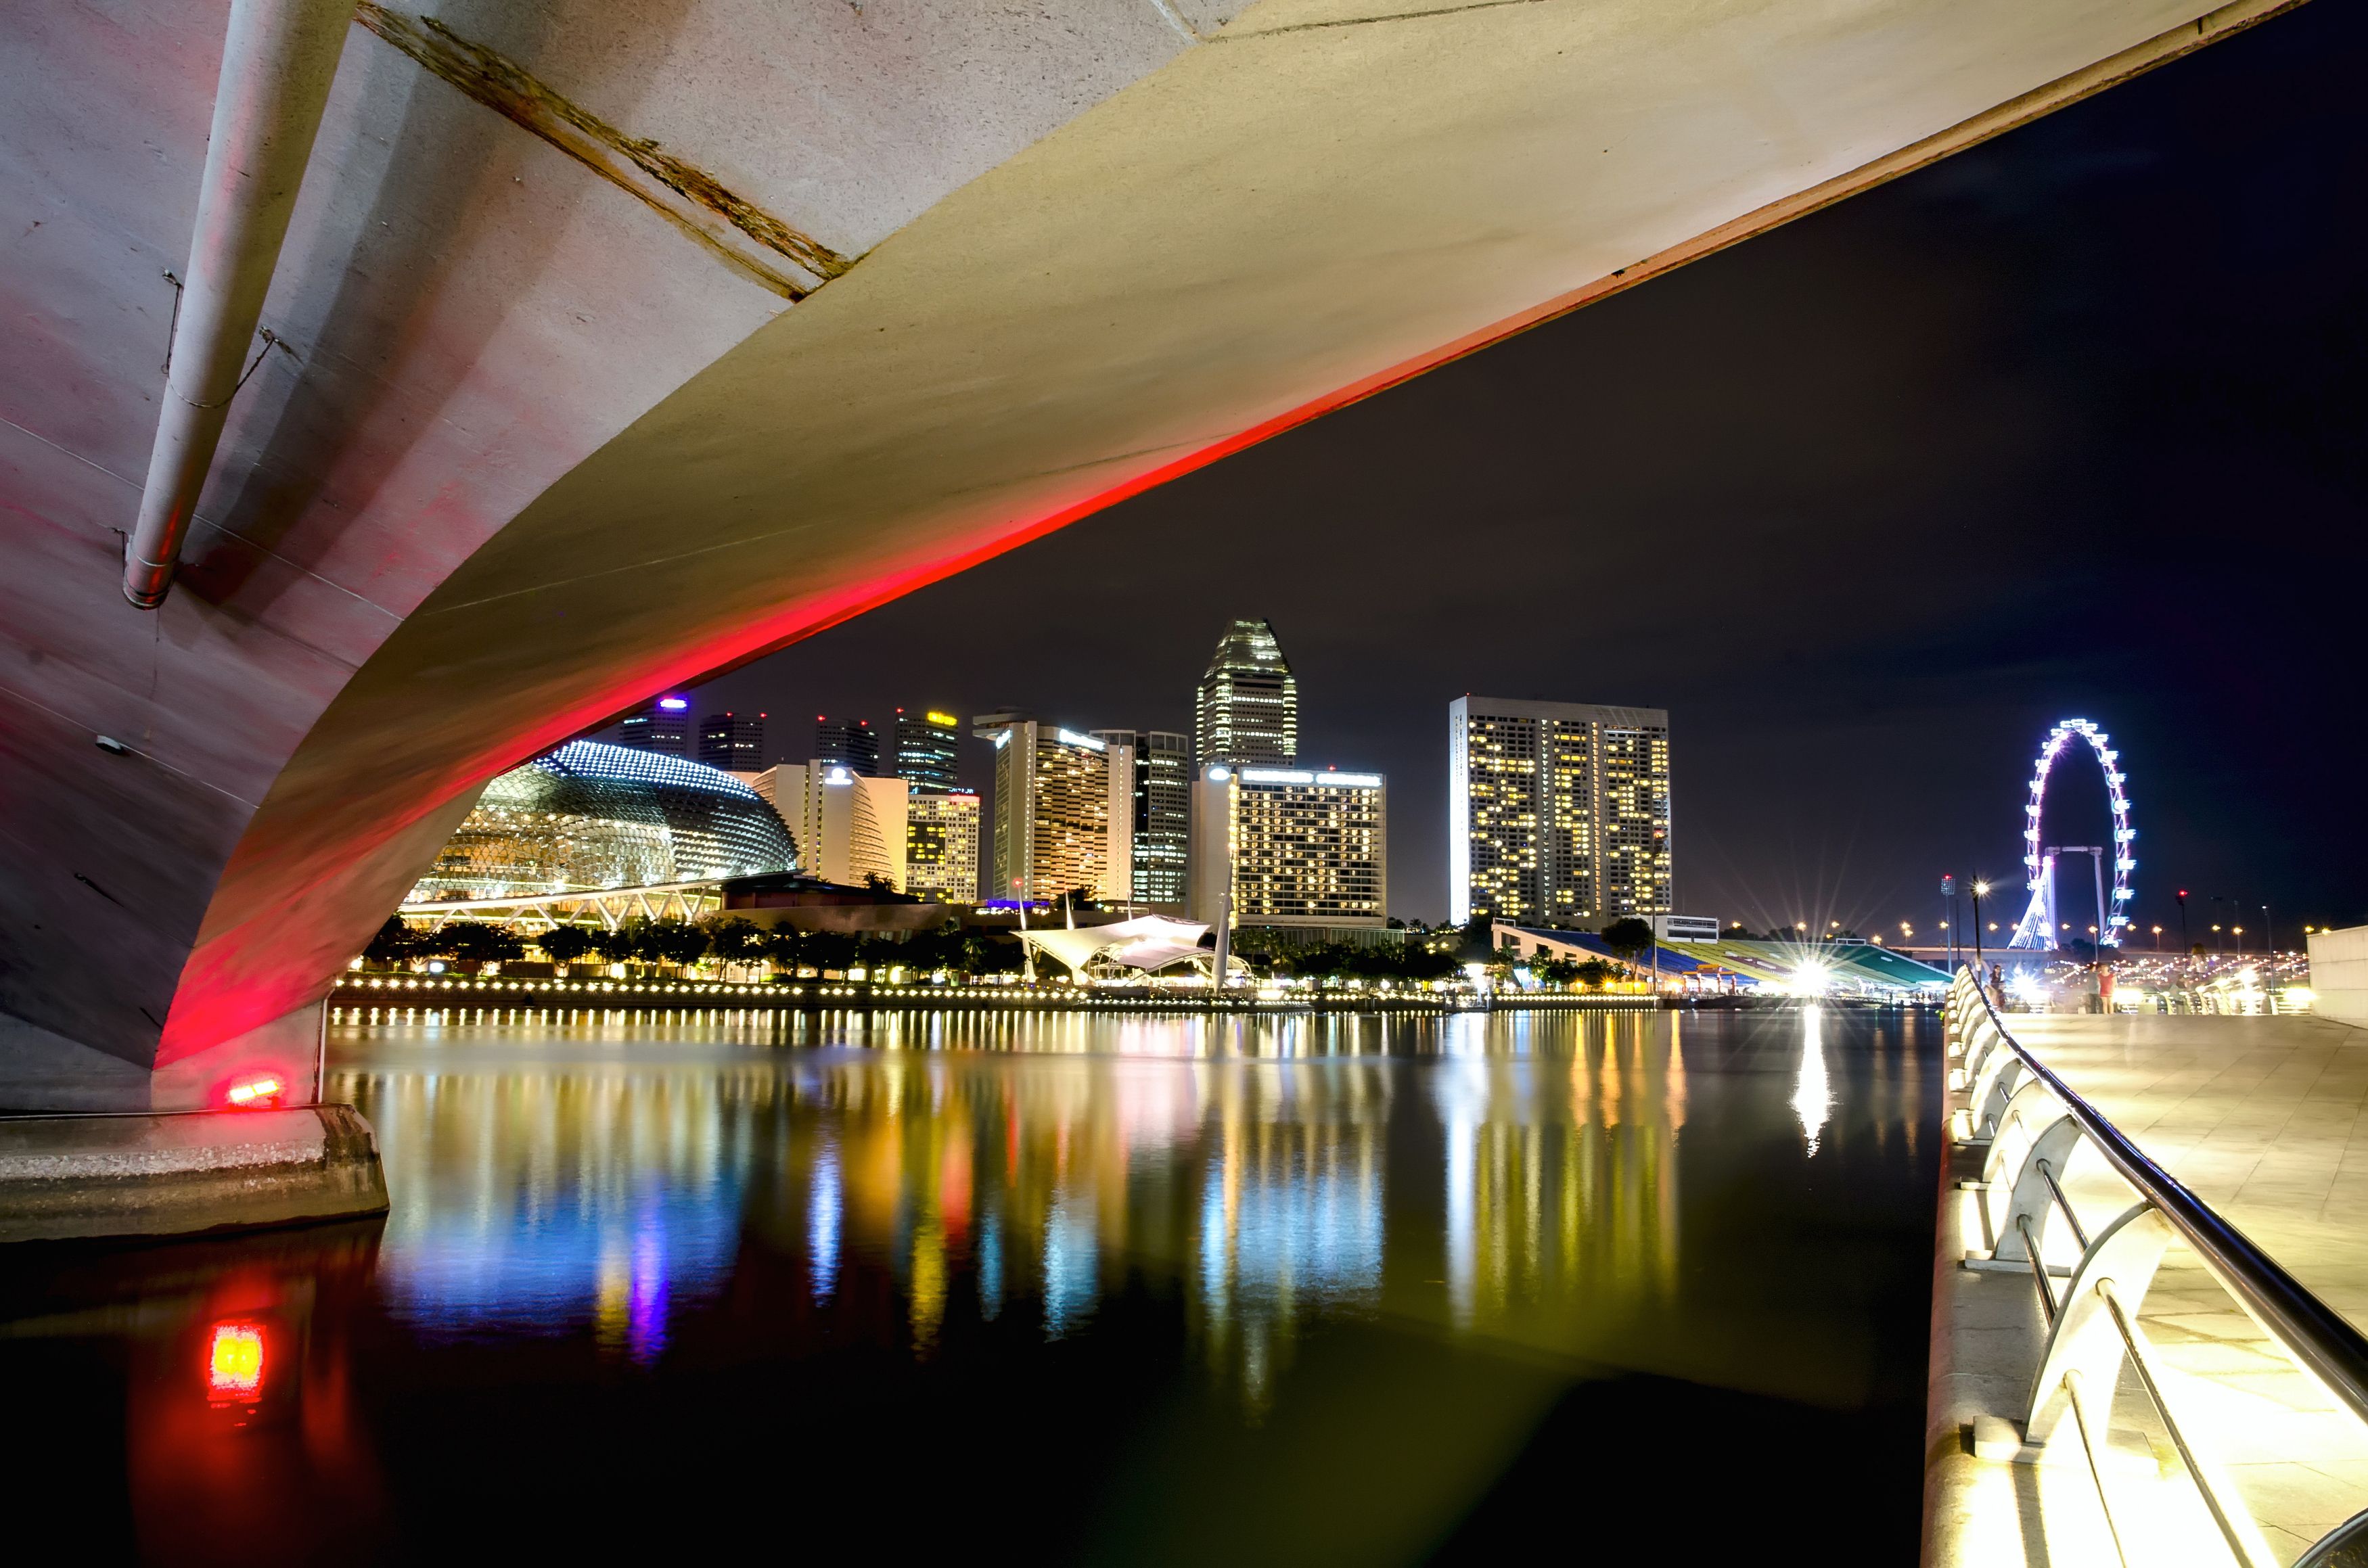 Сингапур, ночь, вид, пейзаж, современный, яркий, азия, залив, набережная, мост, красивый,архитектура, поездка, путешествие, тур, отражение, Сытилин Павел